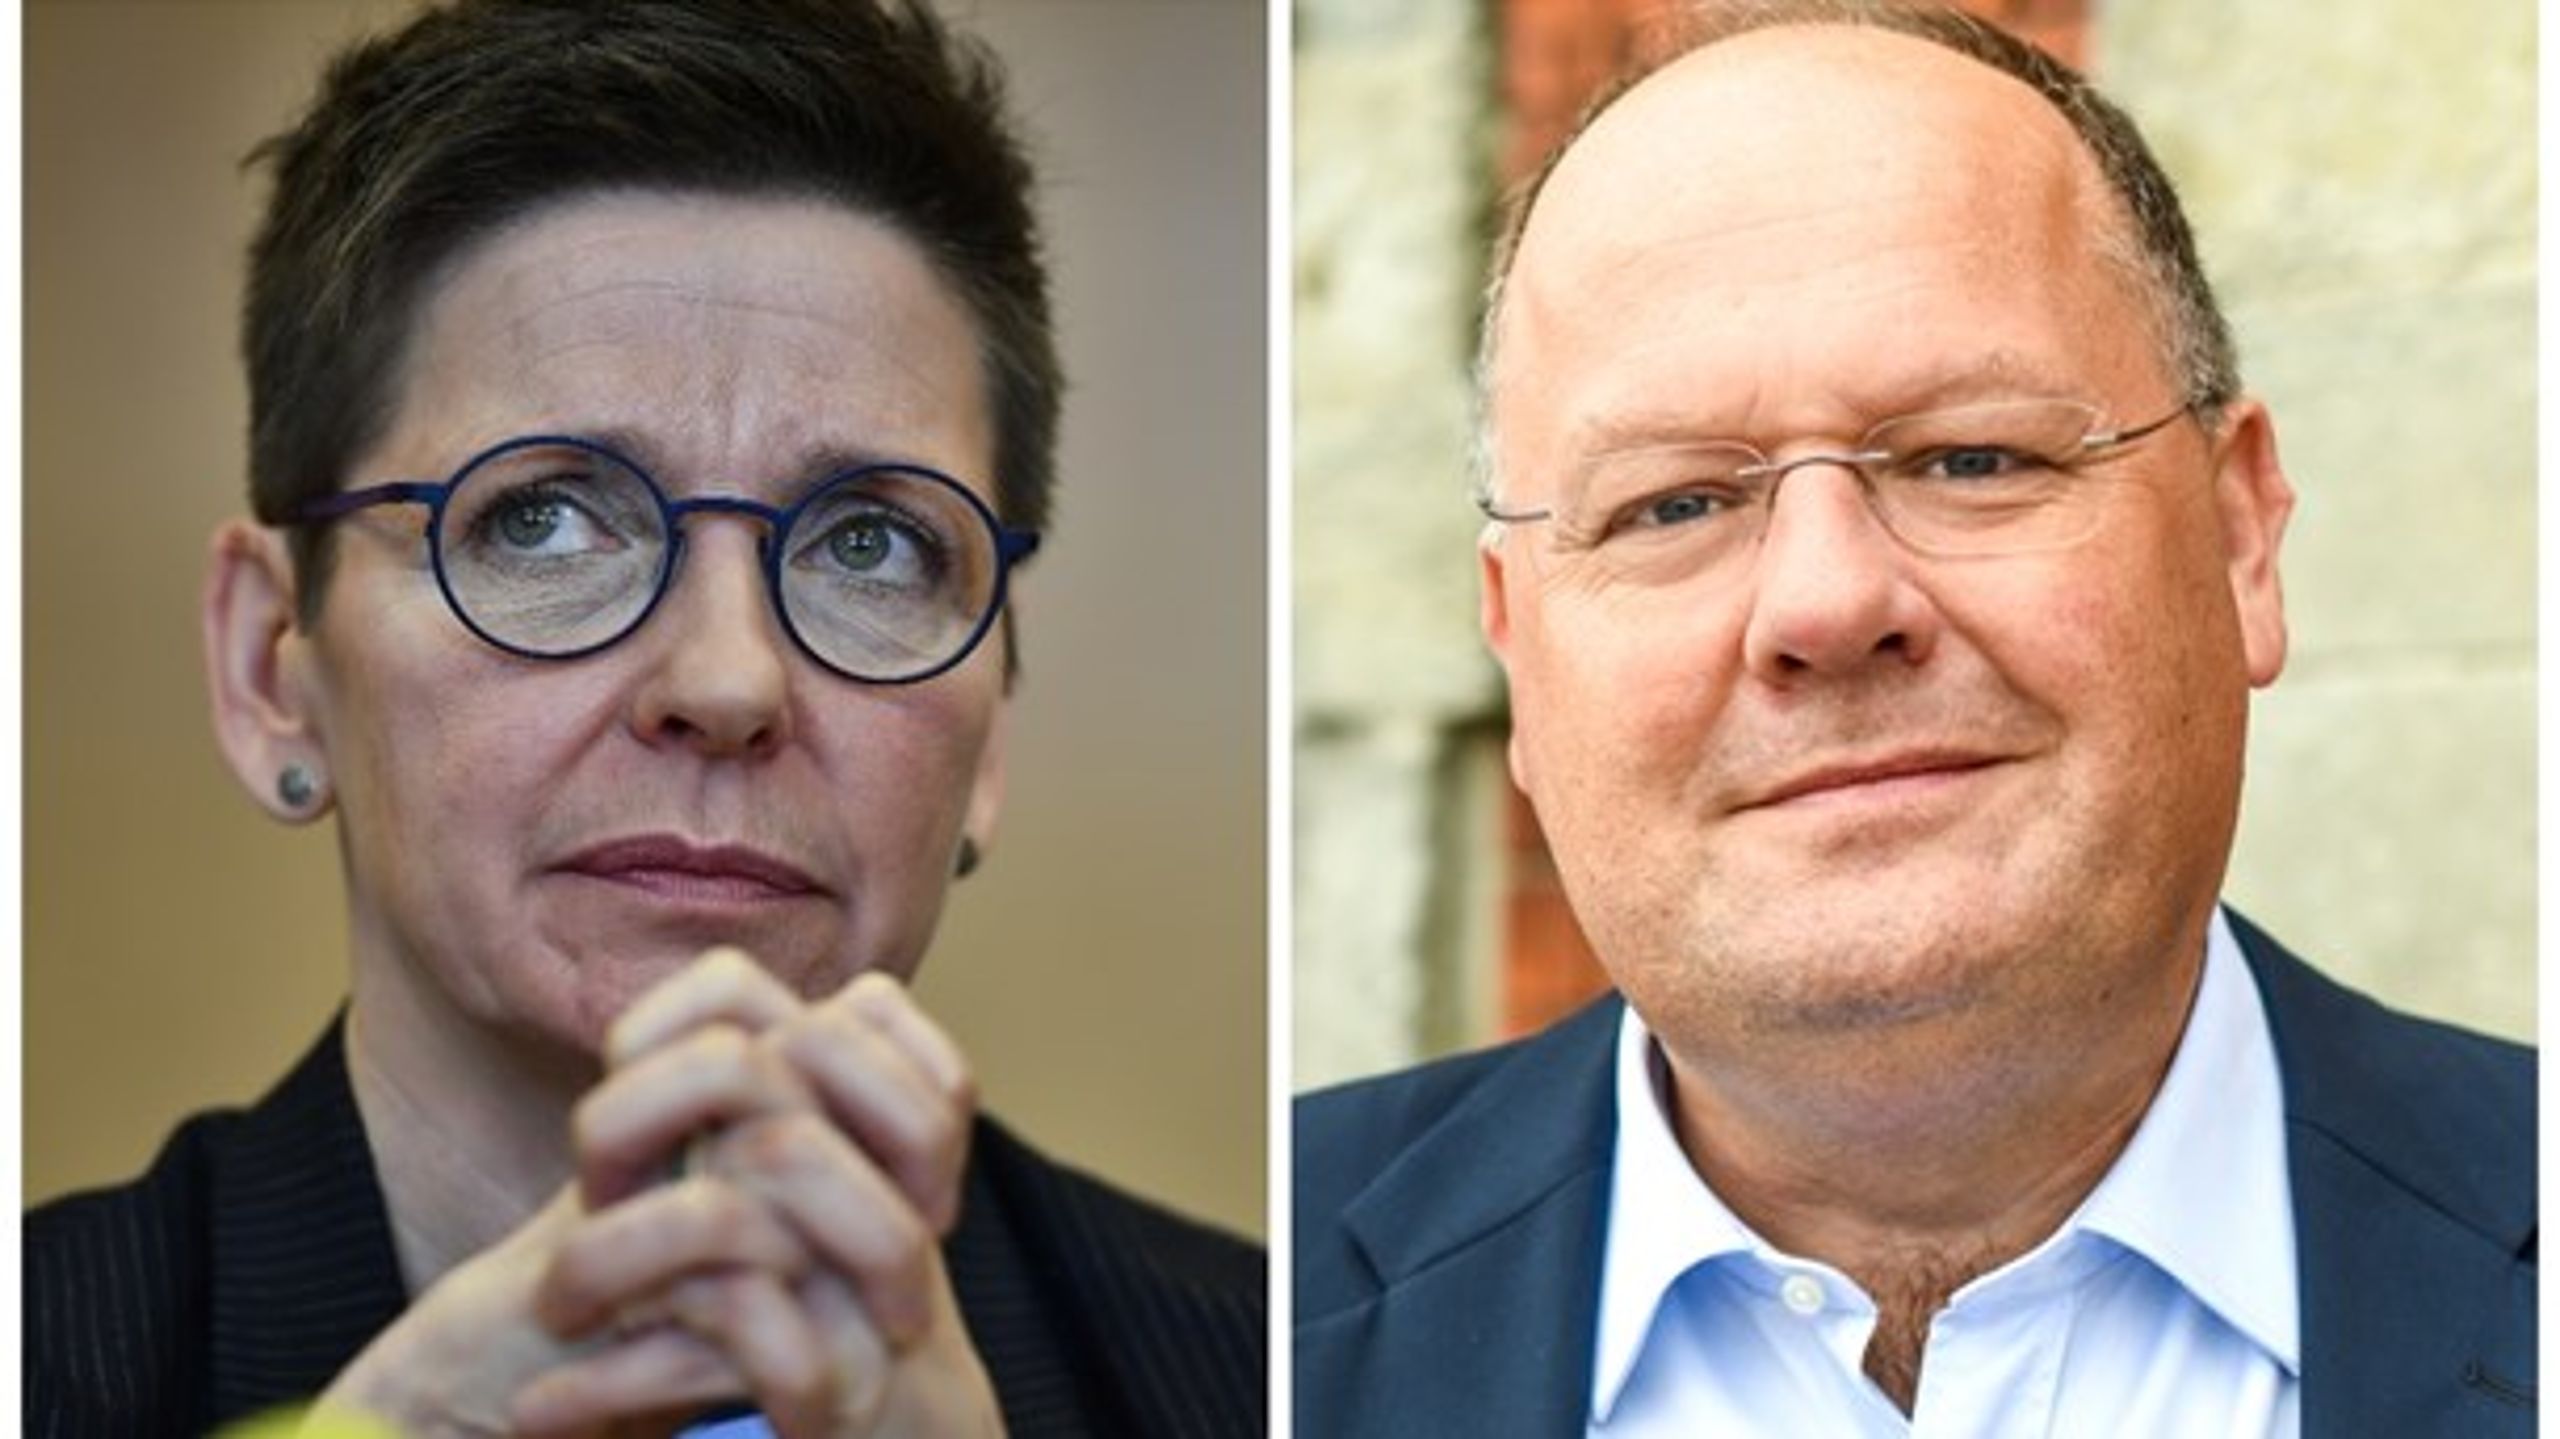 Ann-Sofie Hermansson (S)&nbsp;står åtalad för grovt förtal och Torkild Strandberg (L) går först i kommunkampen mot EBO-lagen.